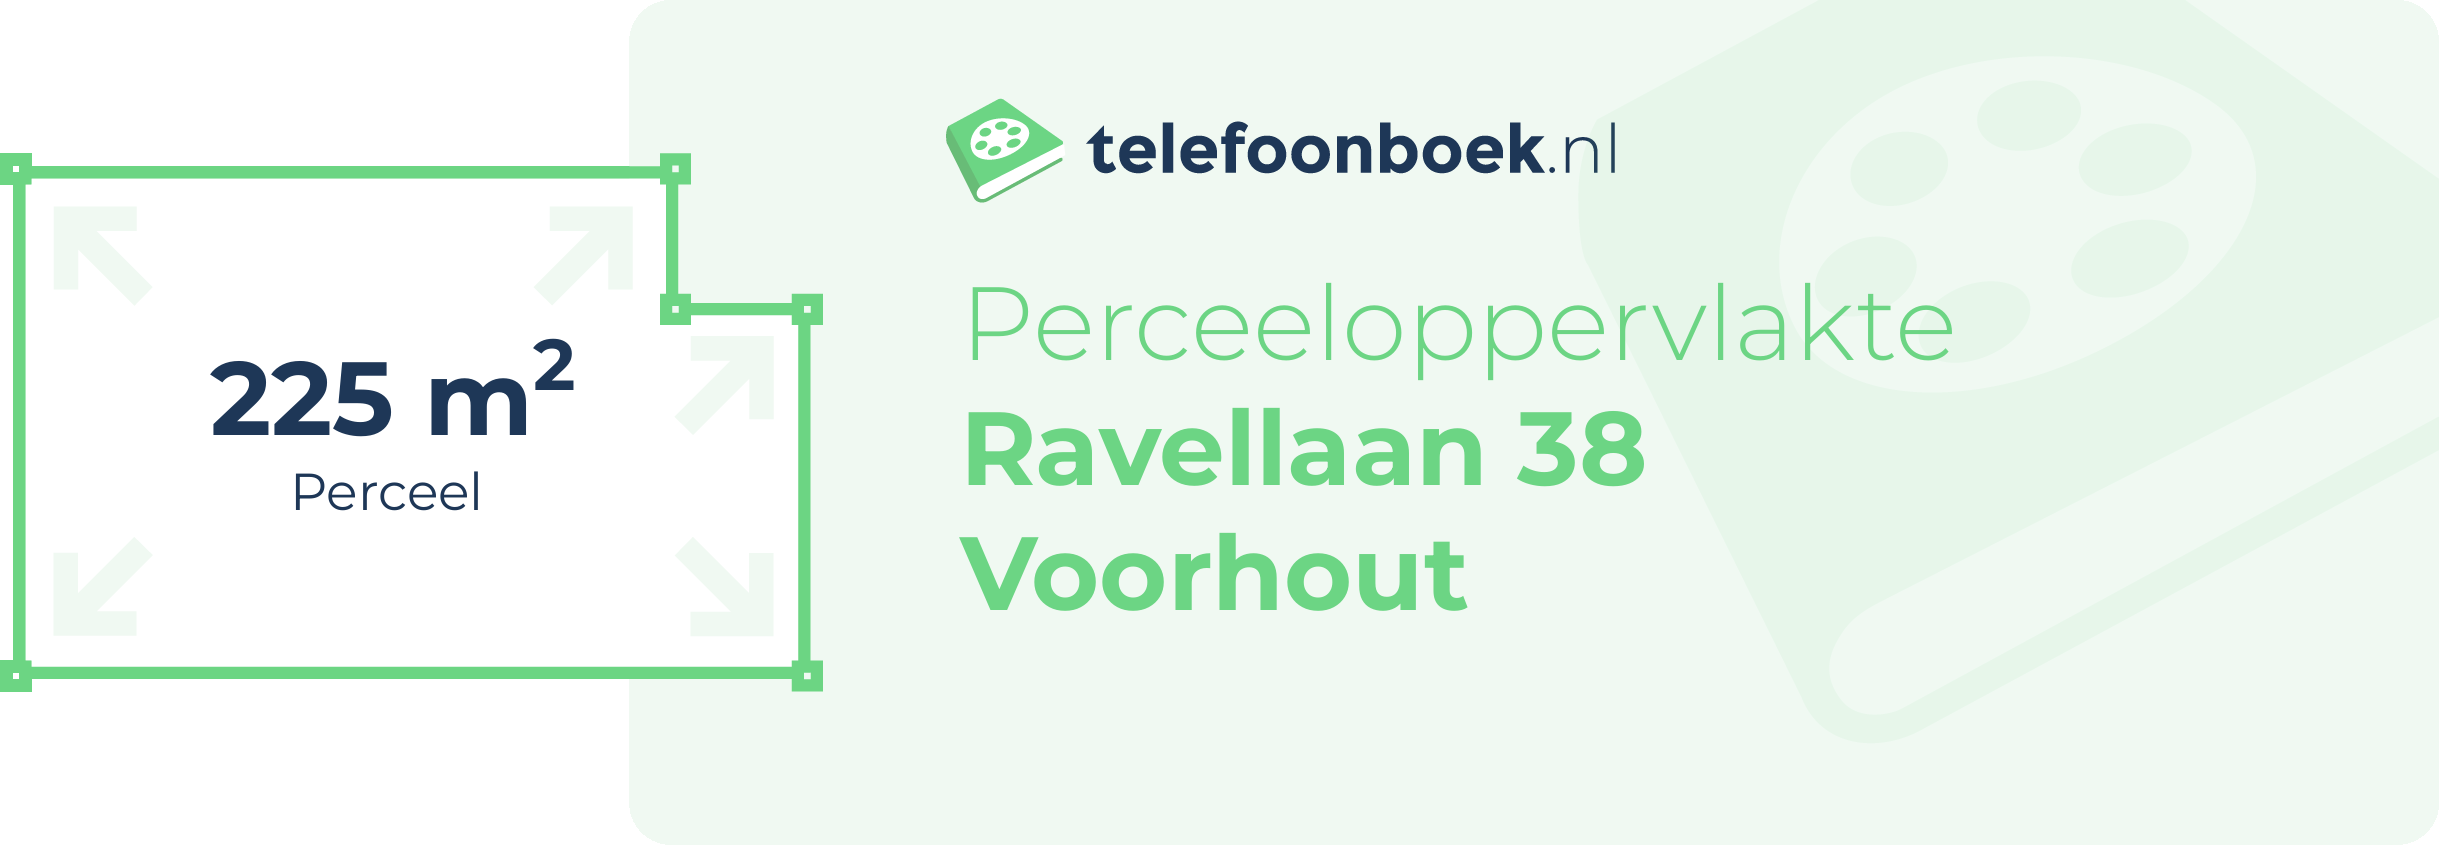 Perceeloppervlakte Ravellaan 38 Voorhout